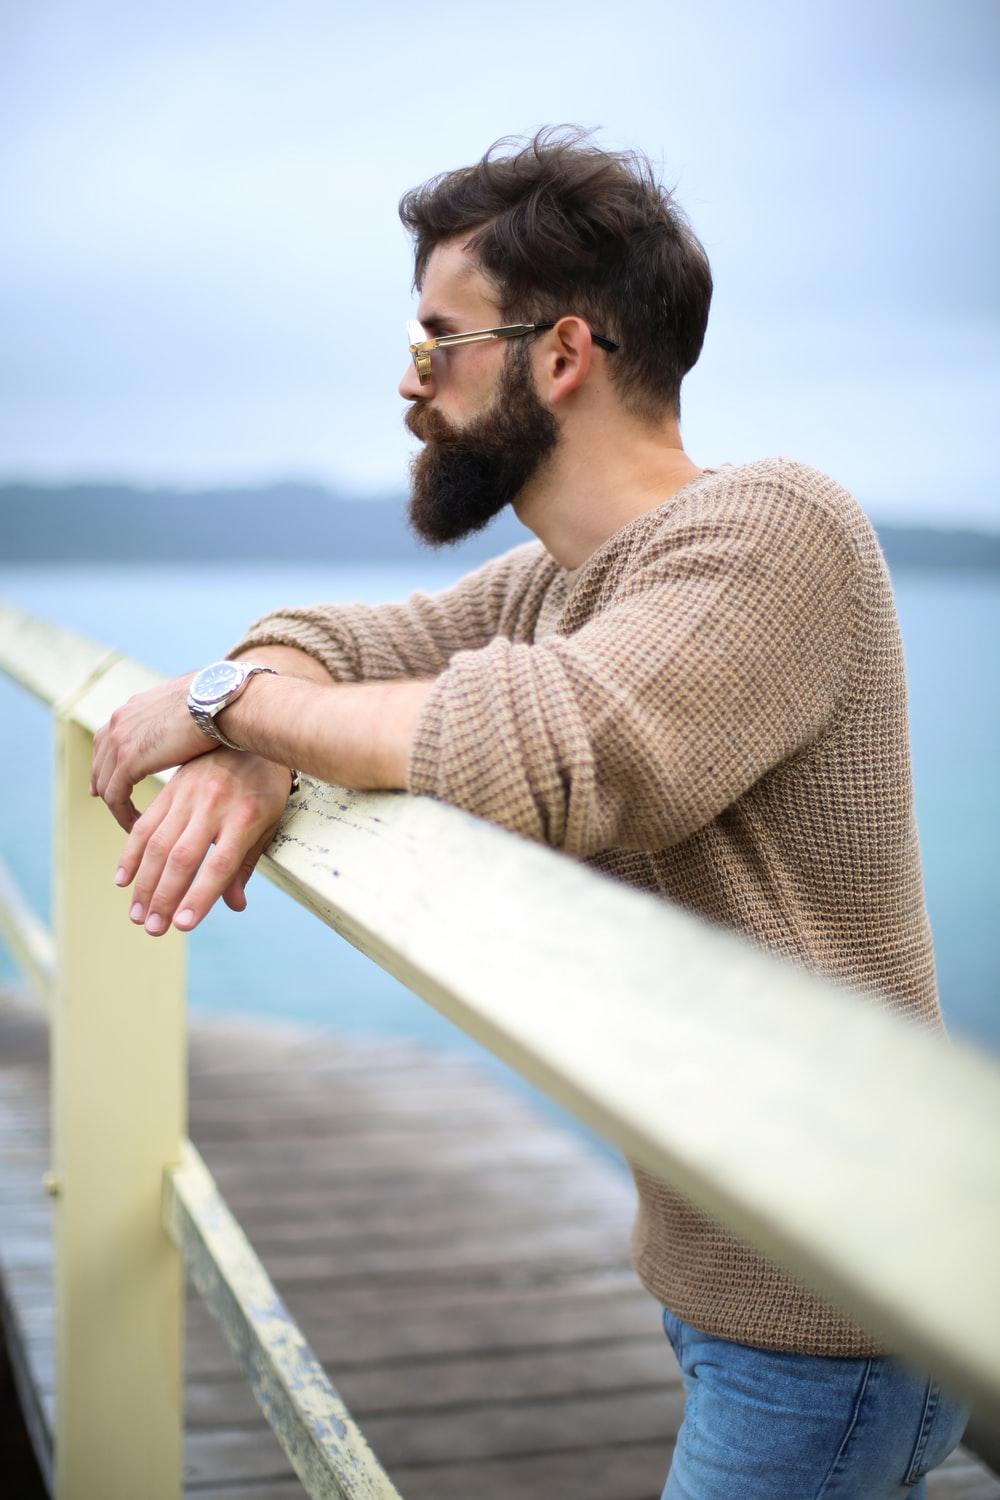 How to Trim & Shape a Beard Neckline